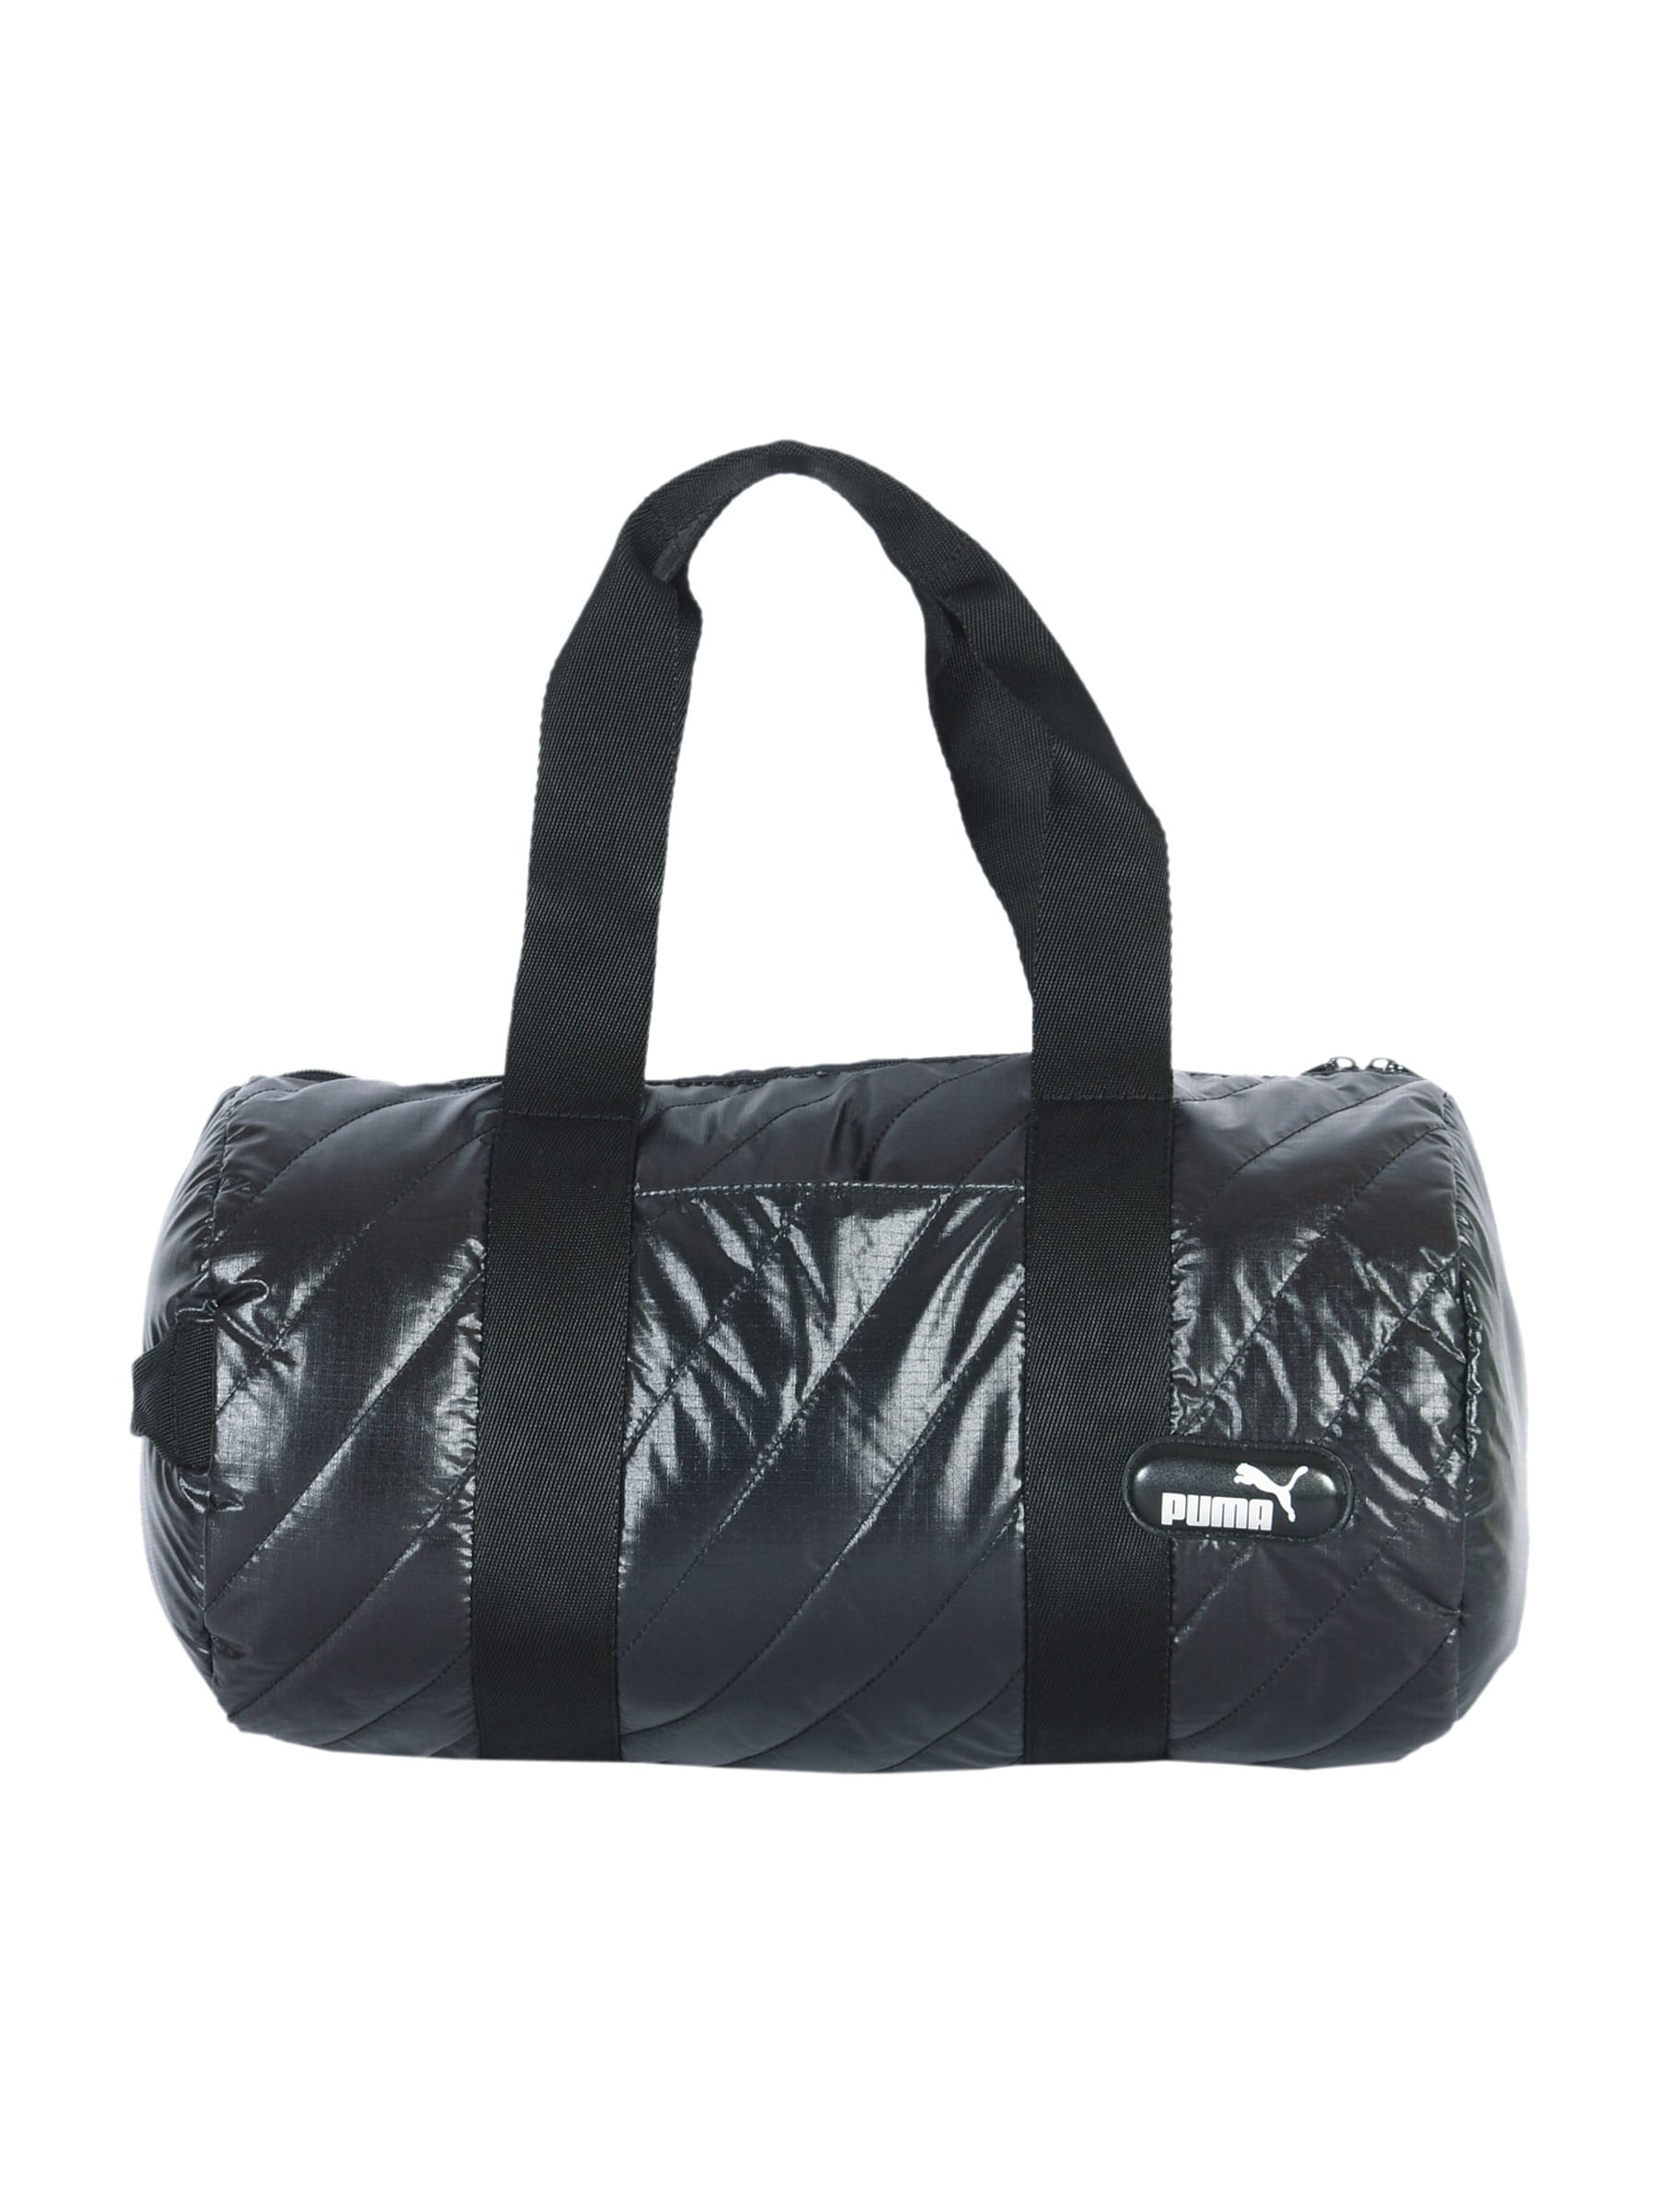 Puma Unisex Dizzy Barrel Black Duffle Bag